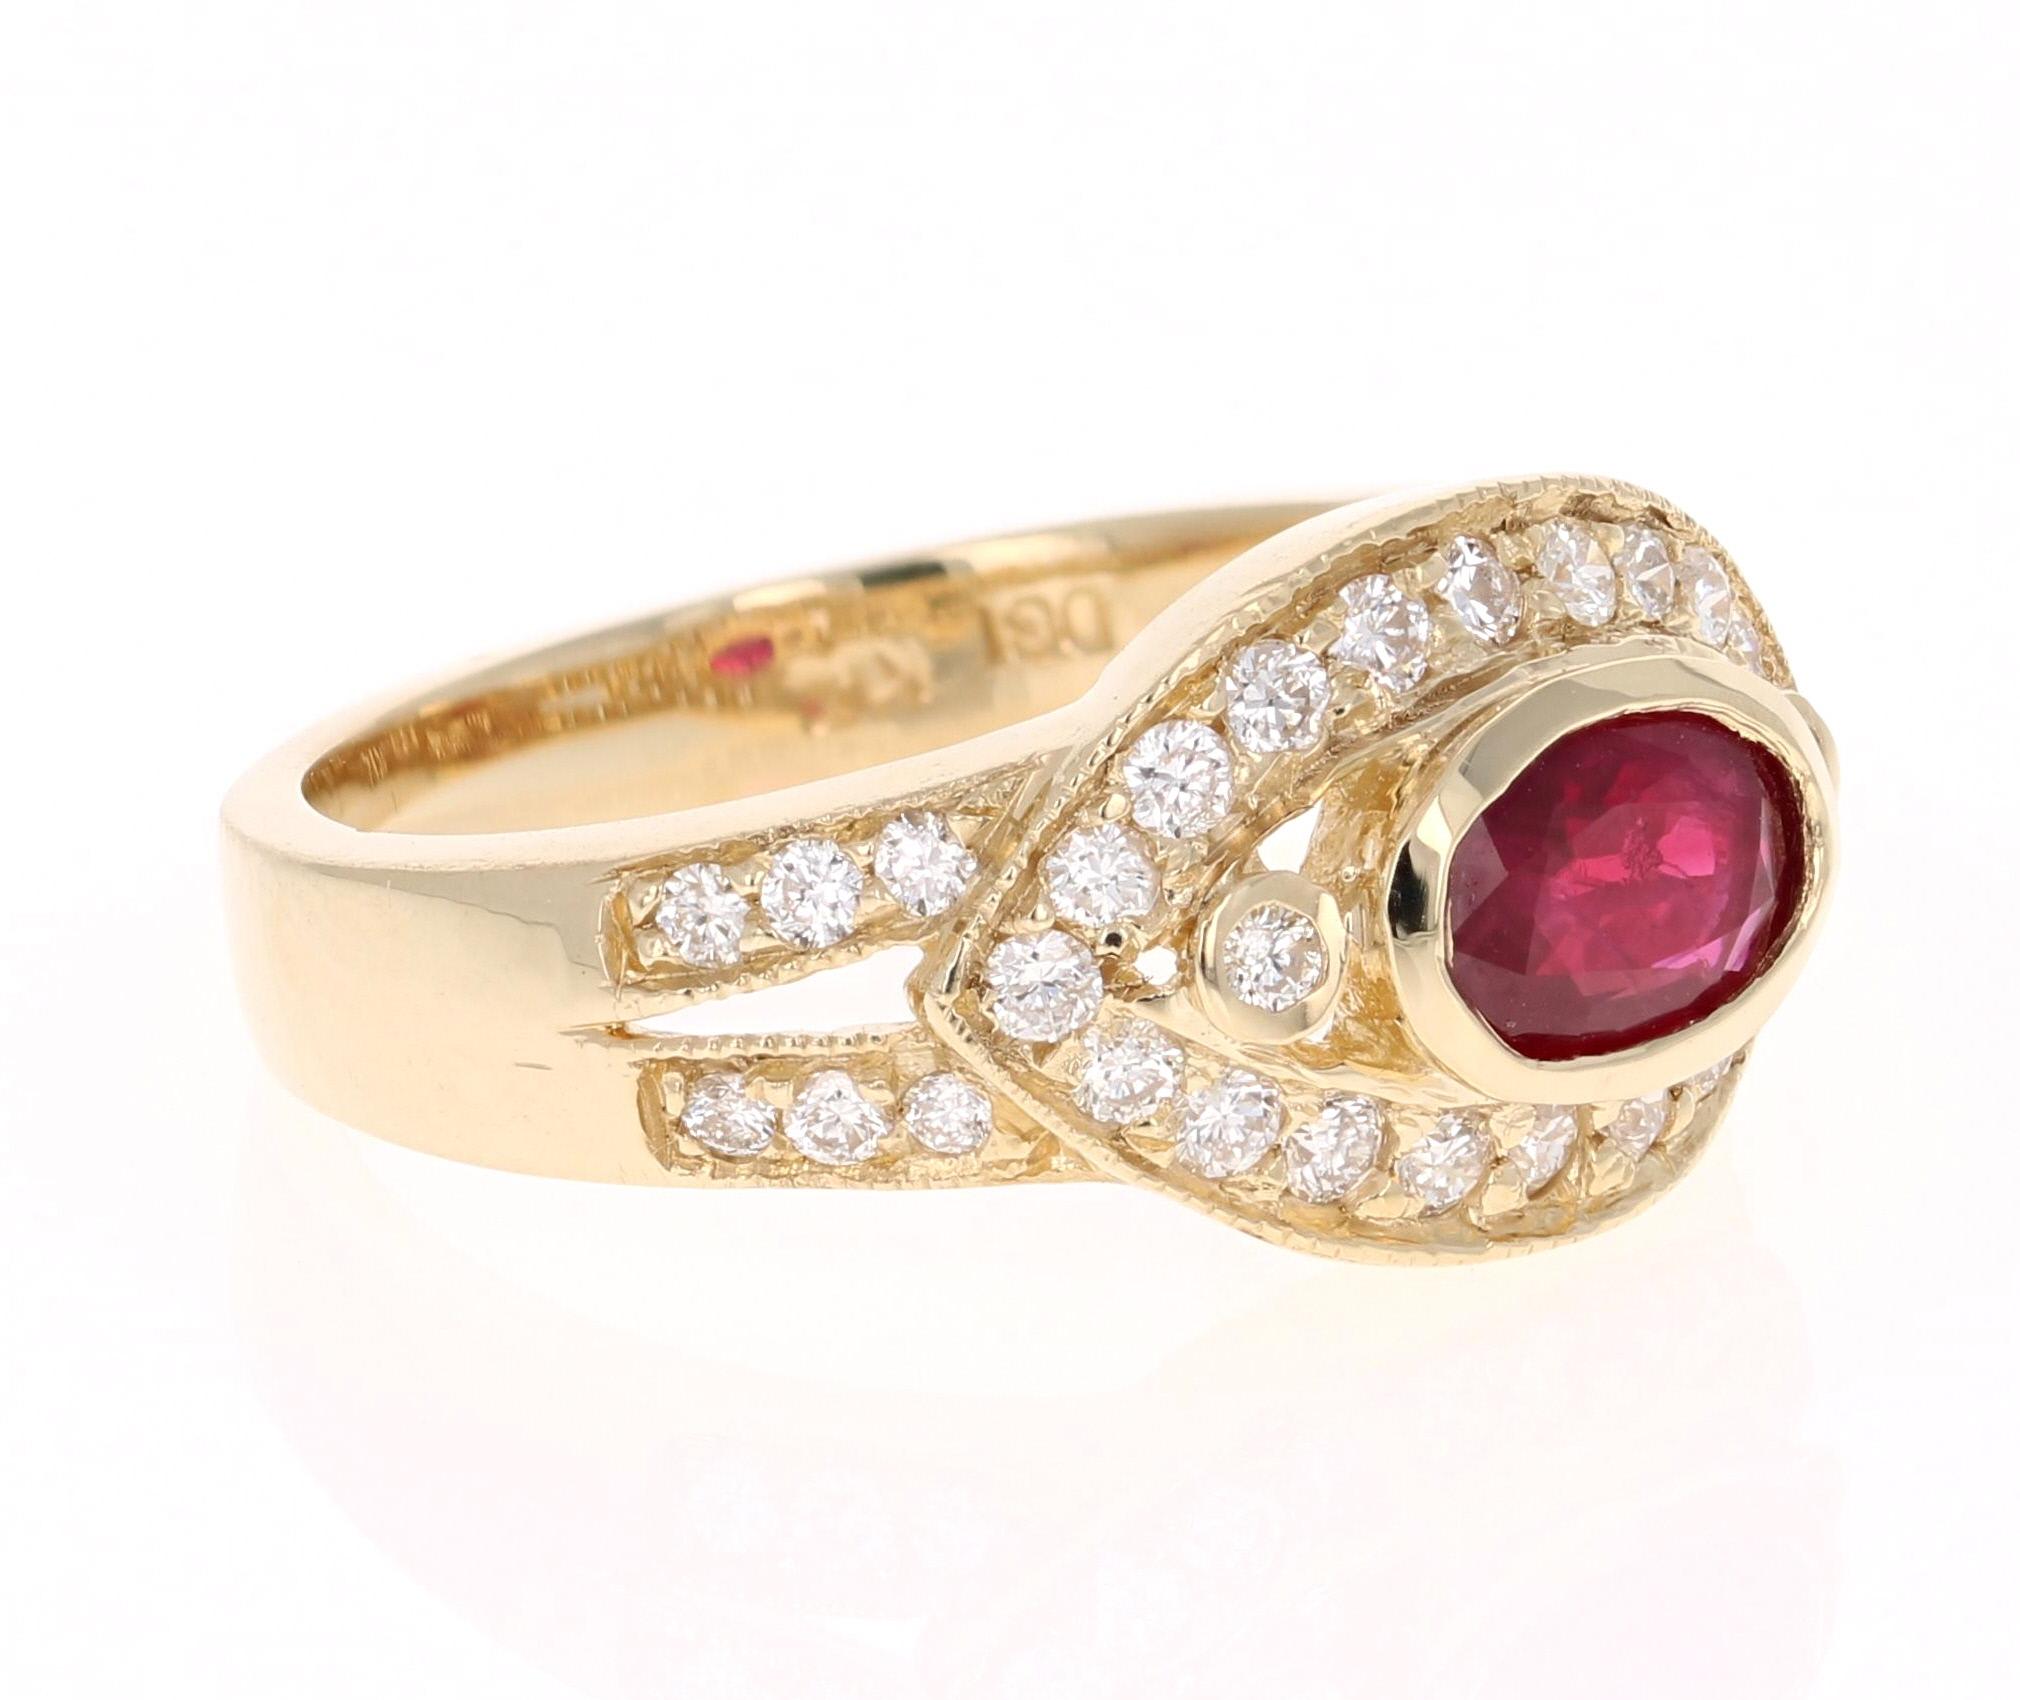 Einfach schöner Rubin-Diamant-Ring mit einem burmesischen Rubin im Ovalschliff von 0,68 Karat, der von 34 Diamanten im Rundschliff mit einem Gewicht von 0,58 Karat umgeben ist. Das Gesamtkaratgewicht des Rings beträgt 1,26 Karat. Die Reinheit und